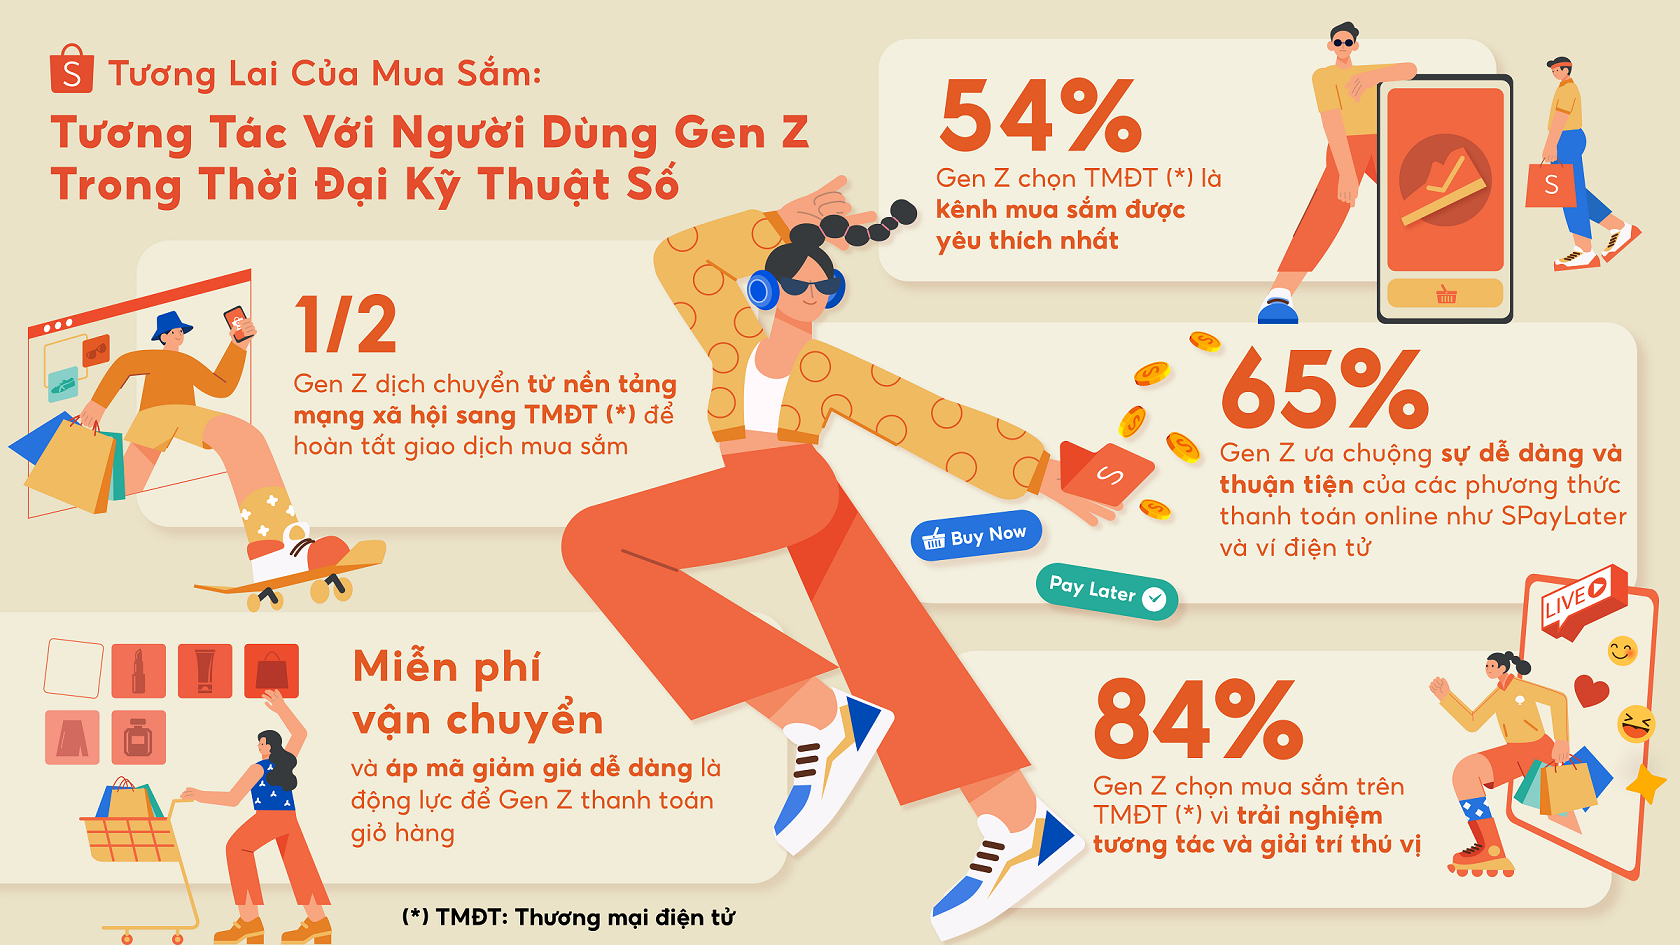 2/3 Gen Z Việt Nam tìm kiếm thông tin mua sắm từ ứng dụng Thương mại điện tử - Khao sat hanh vi mua sam cua Gen Z tai Viet Nam